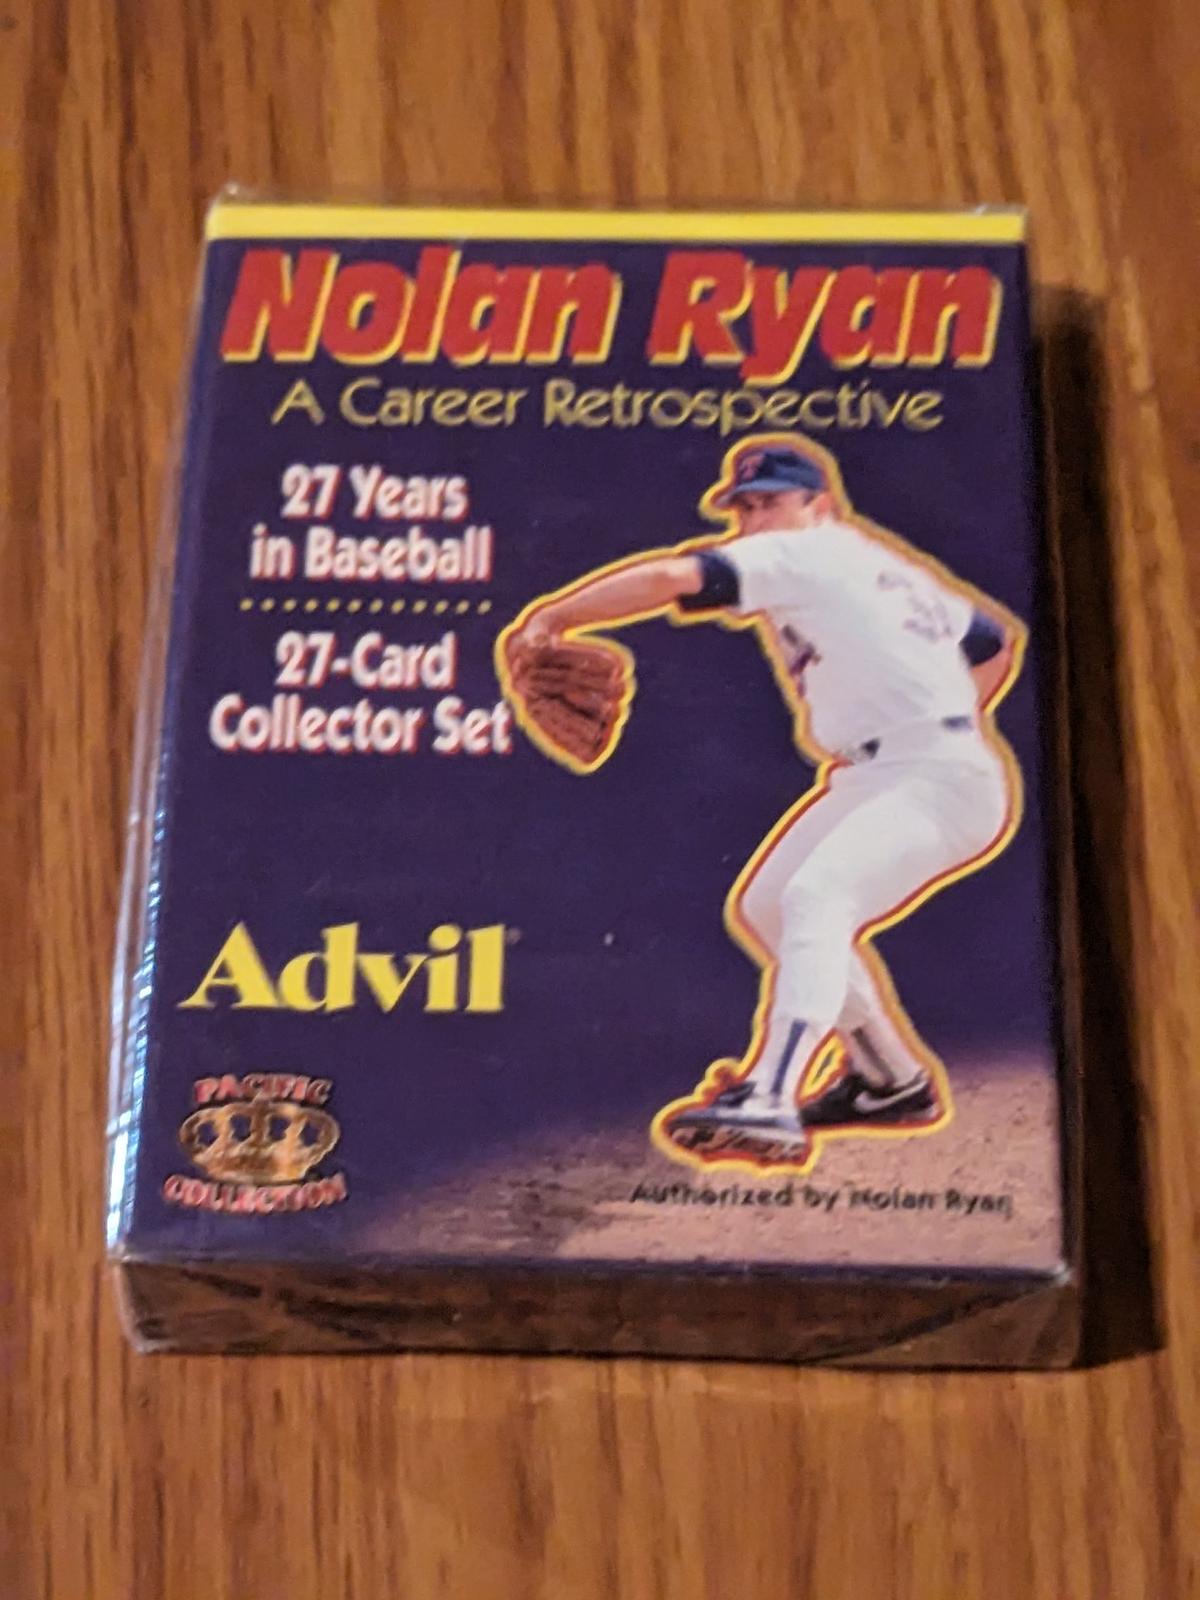 1996 Nolan Ryan sealed 27 card retrospective collector set